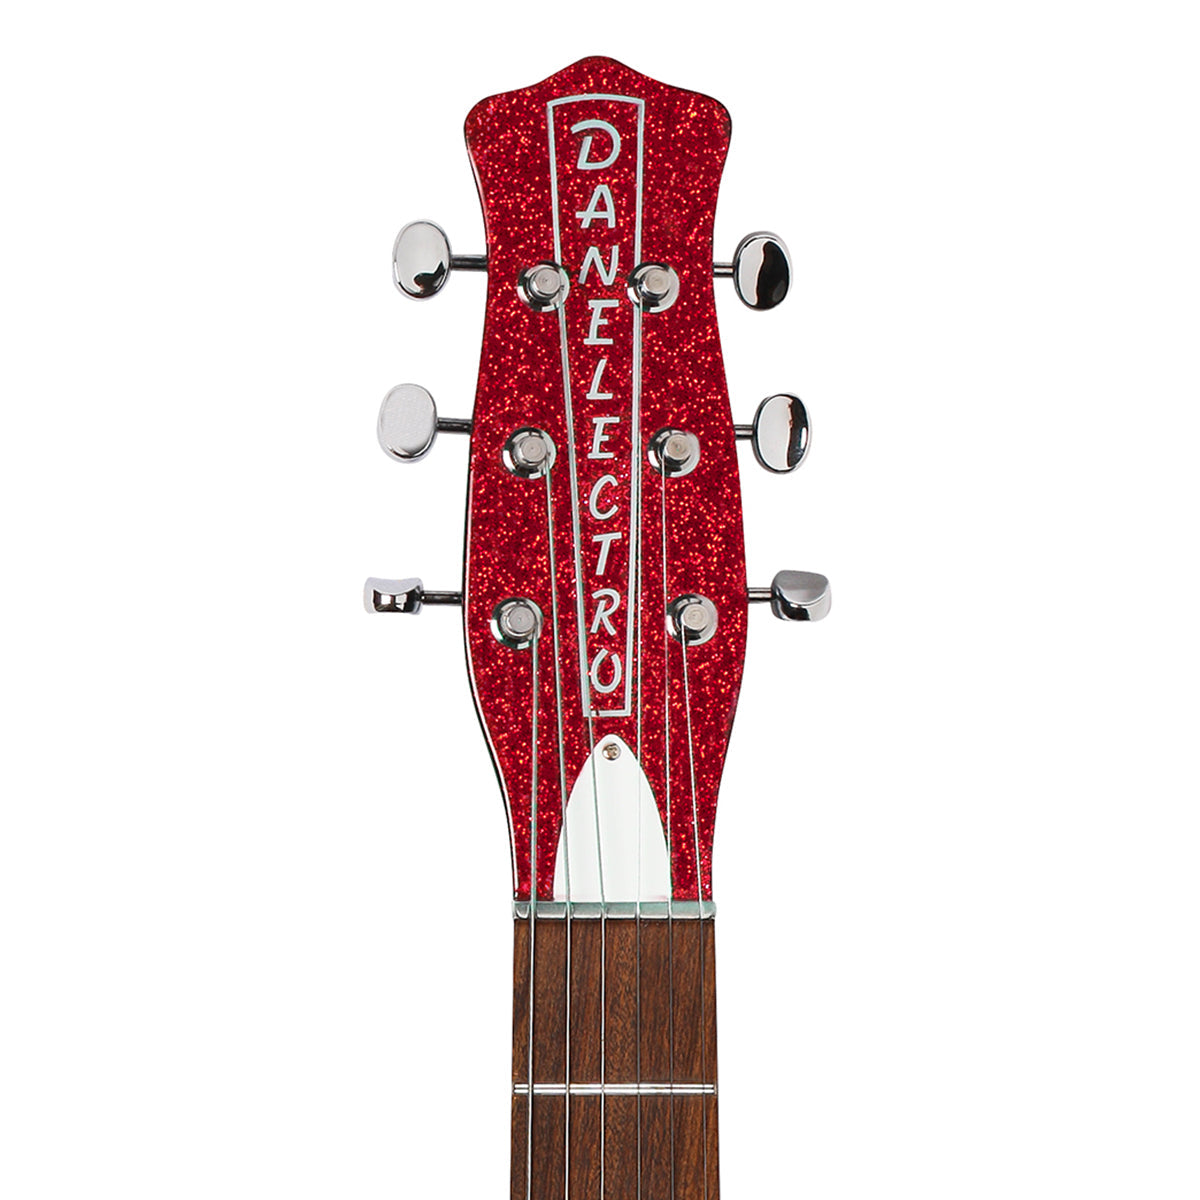 Danelectro '59M NOS Electric Guitar ~ Red Metal Flake